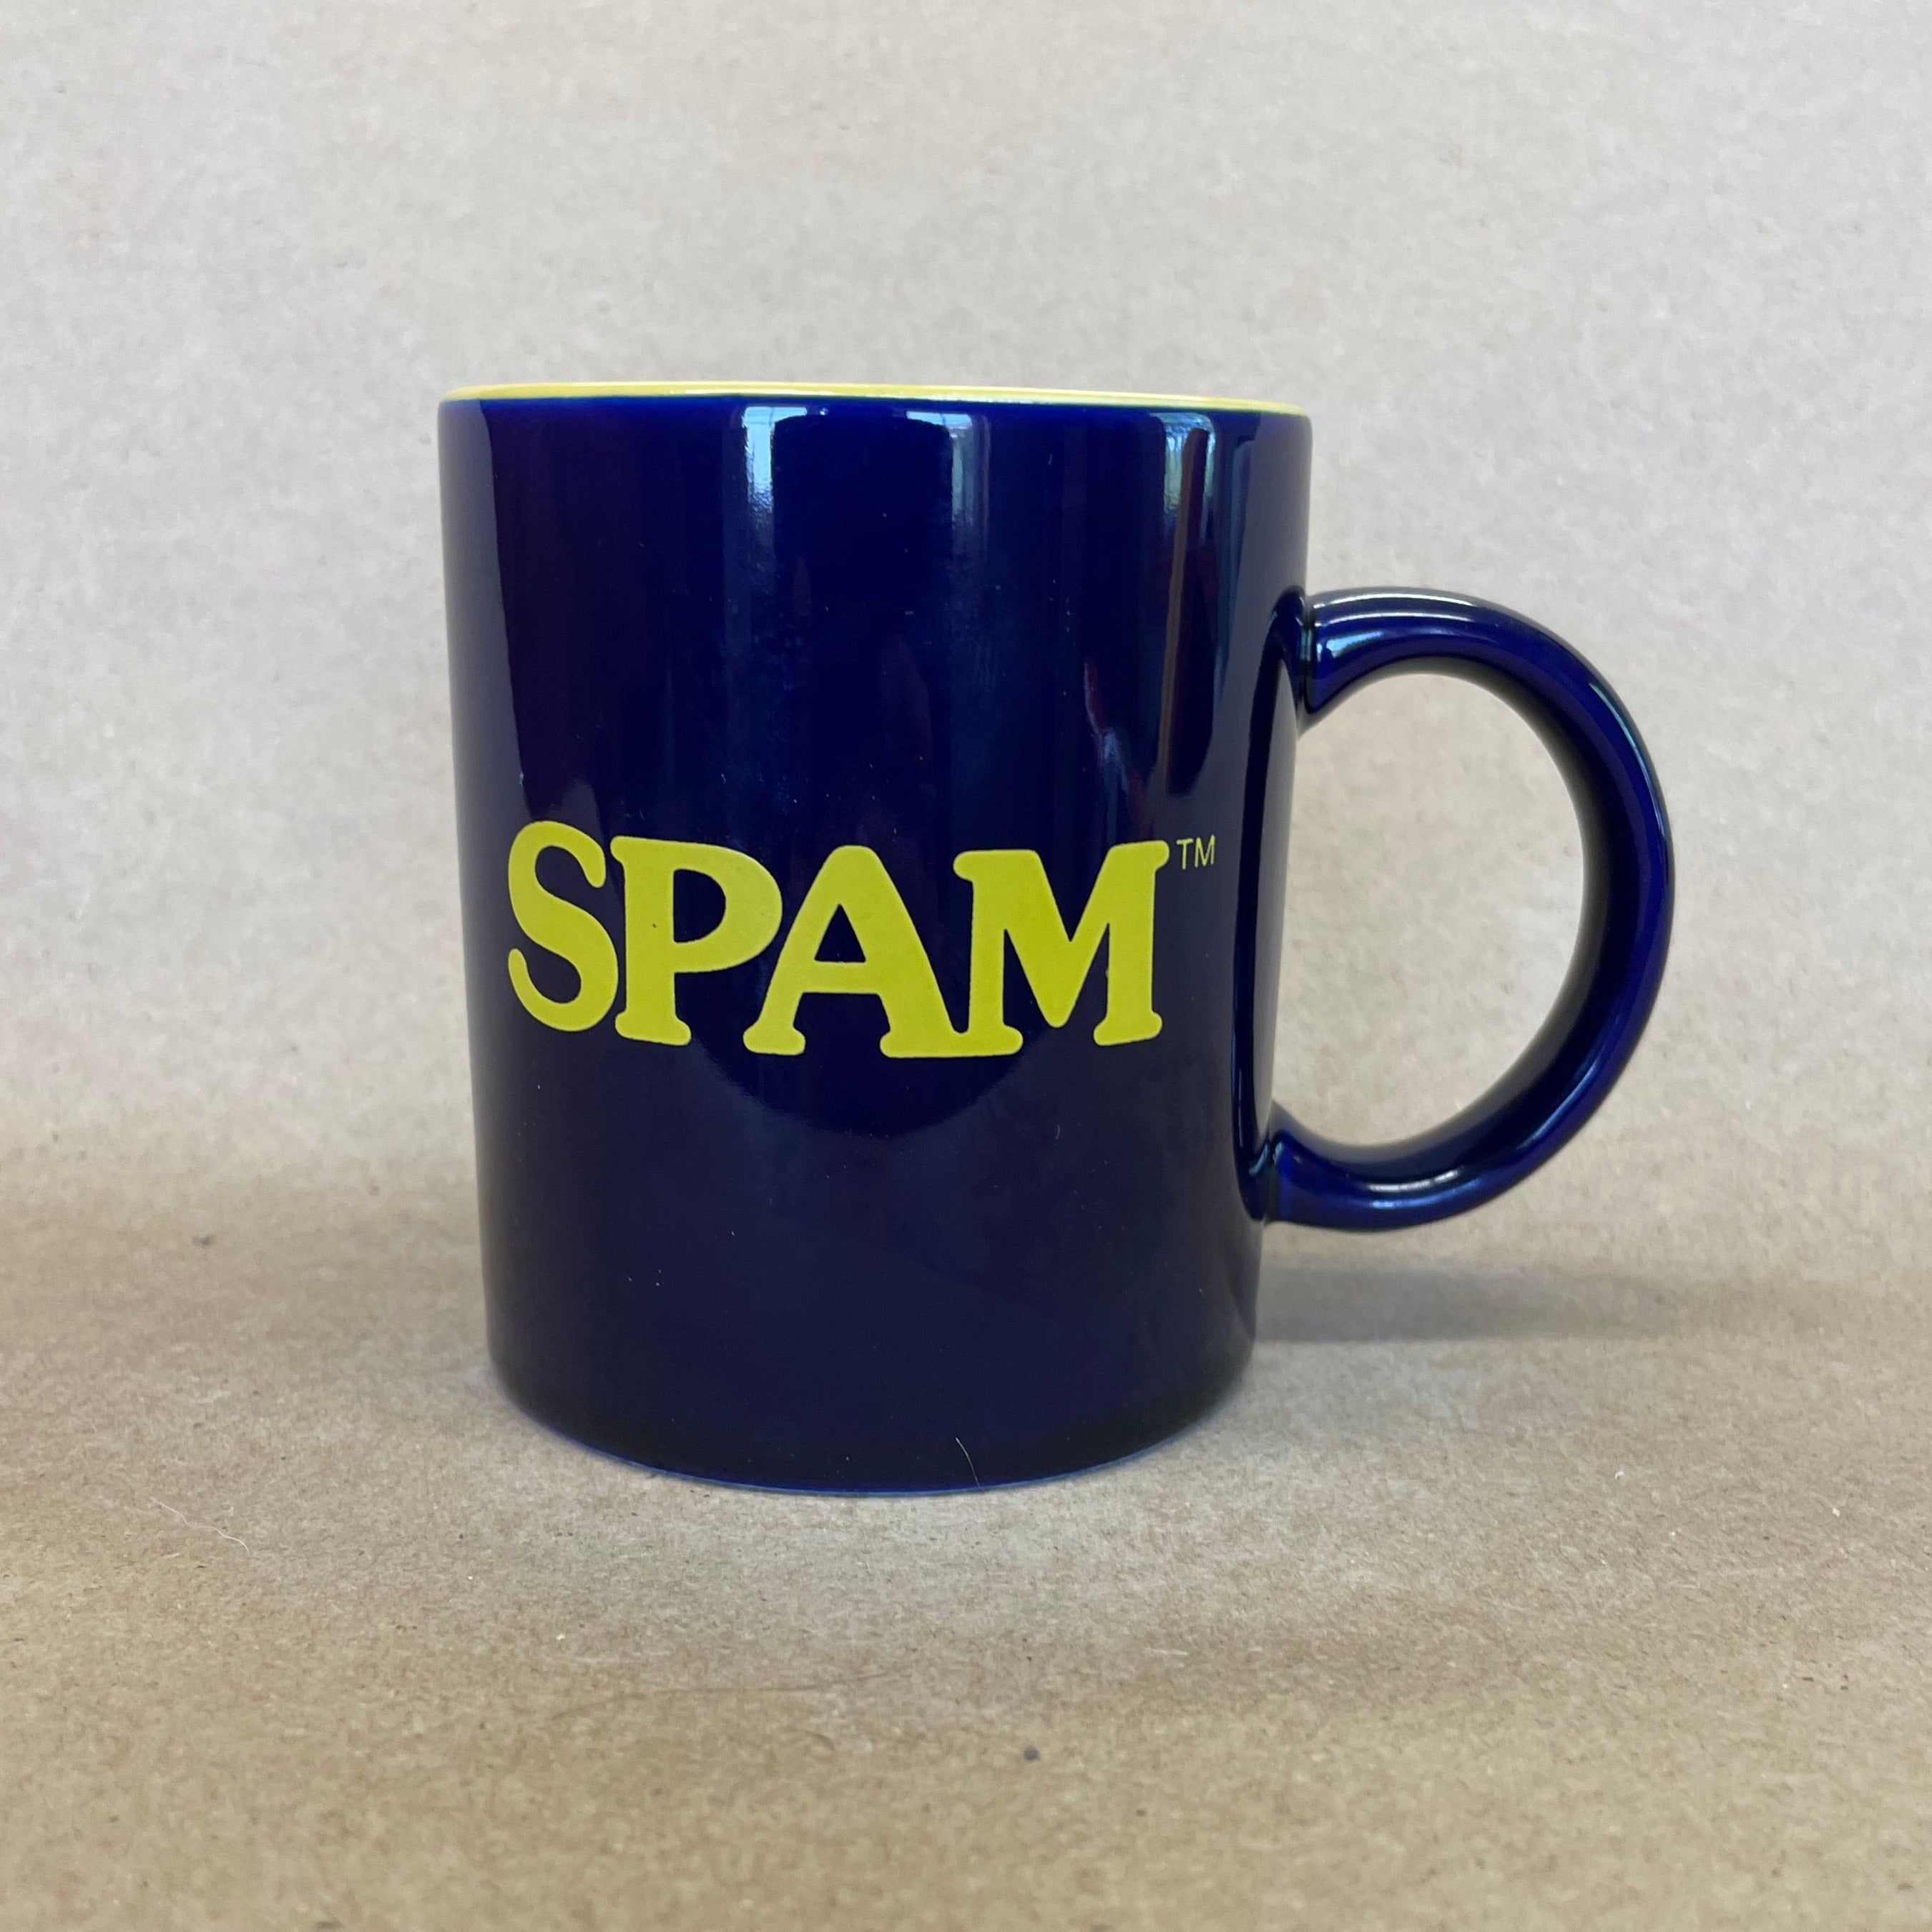 Spam Mug